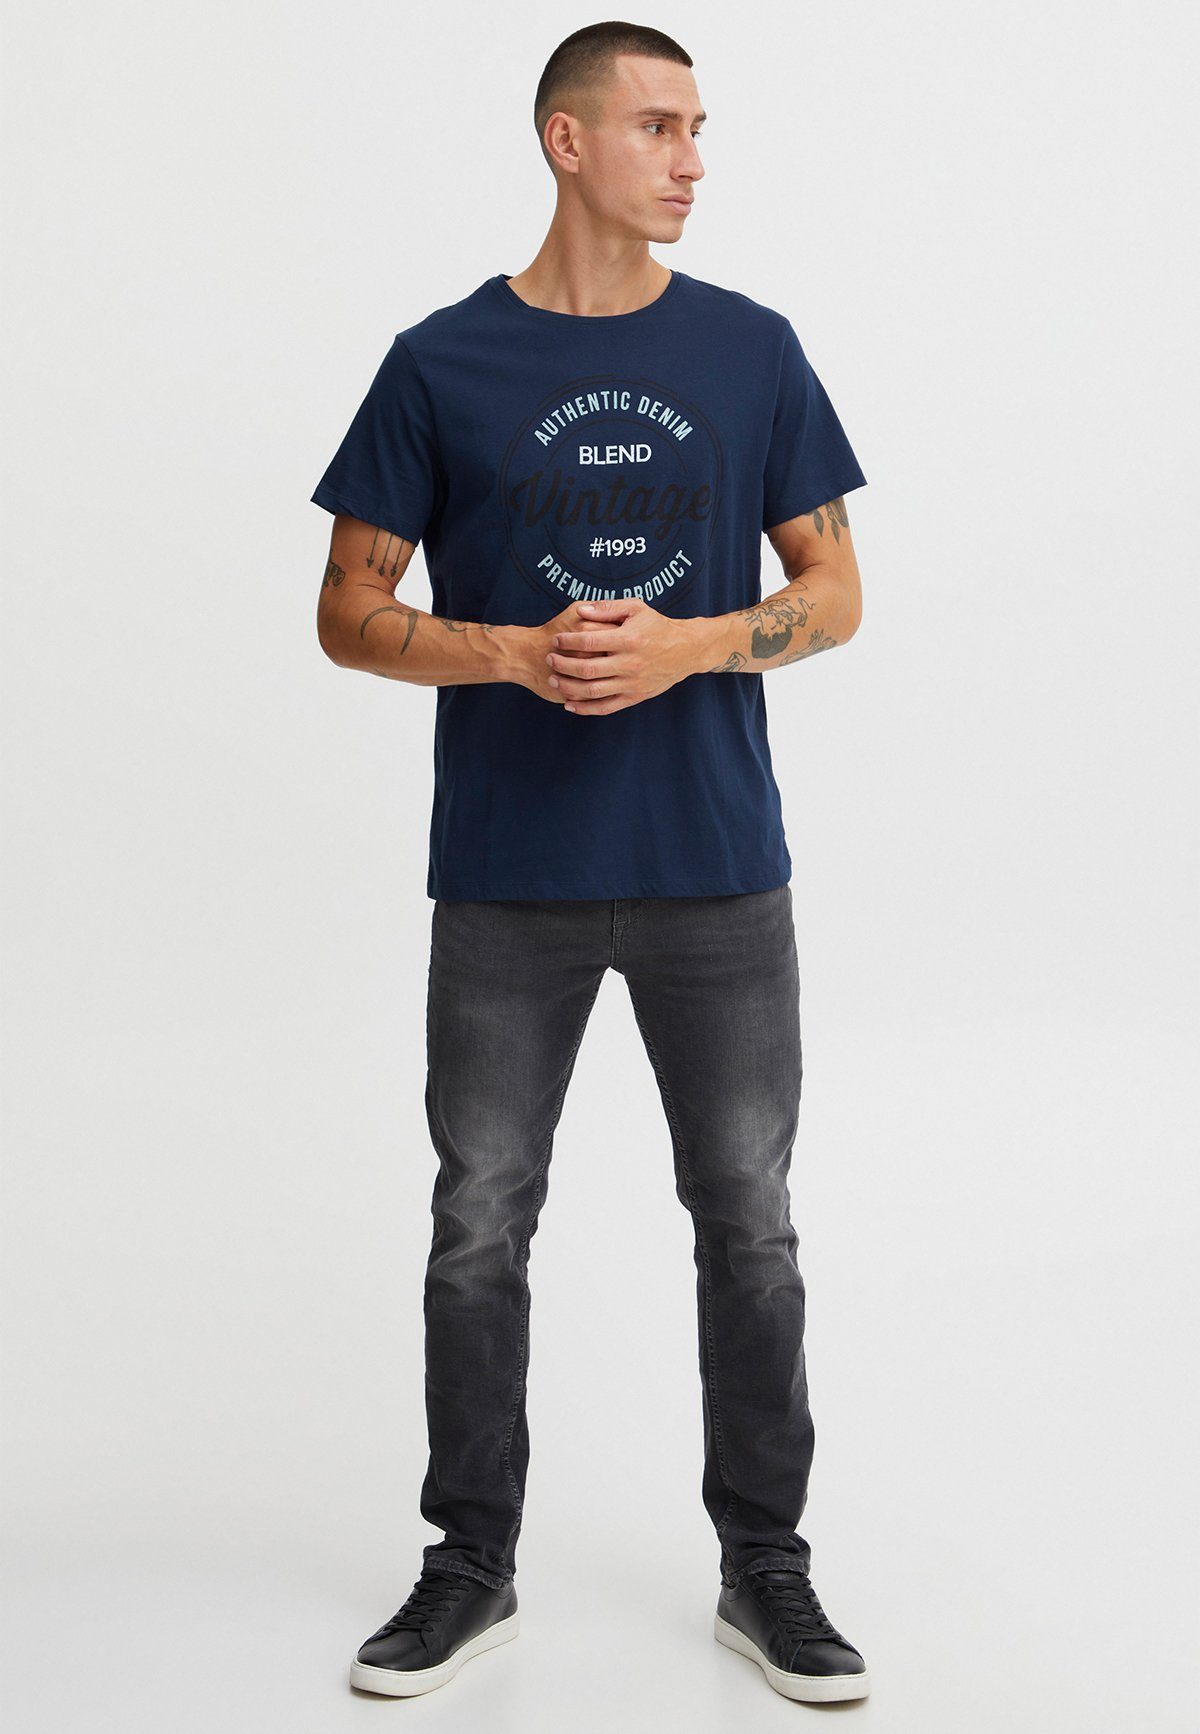 Print Fit in T-Shirt Baumwolle Logo Blend 4387 T-Shirt Shirt Dunkelblau Rundhals Kurzarm Regular